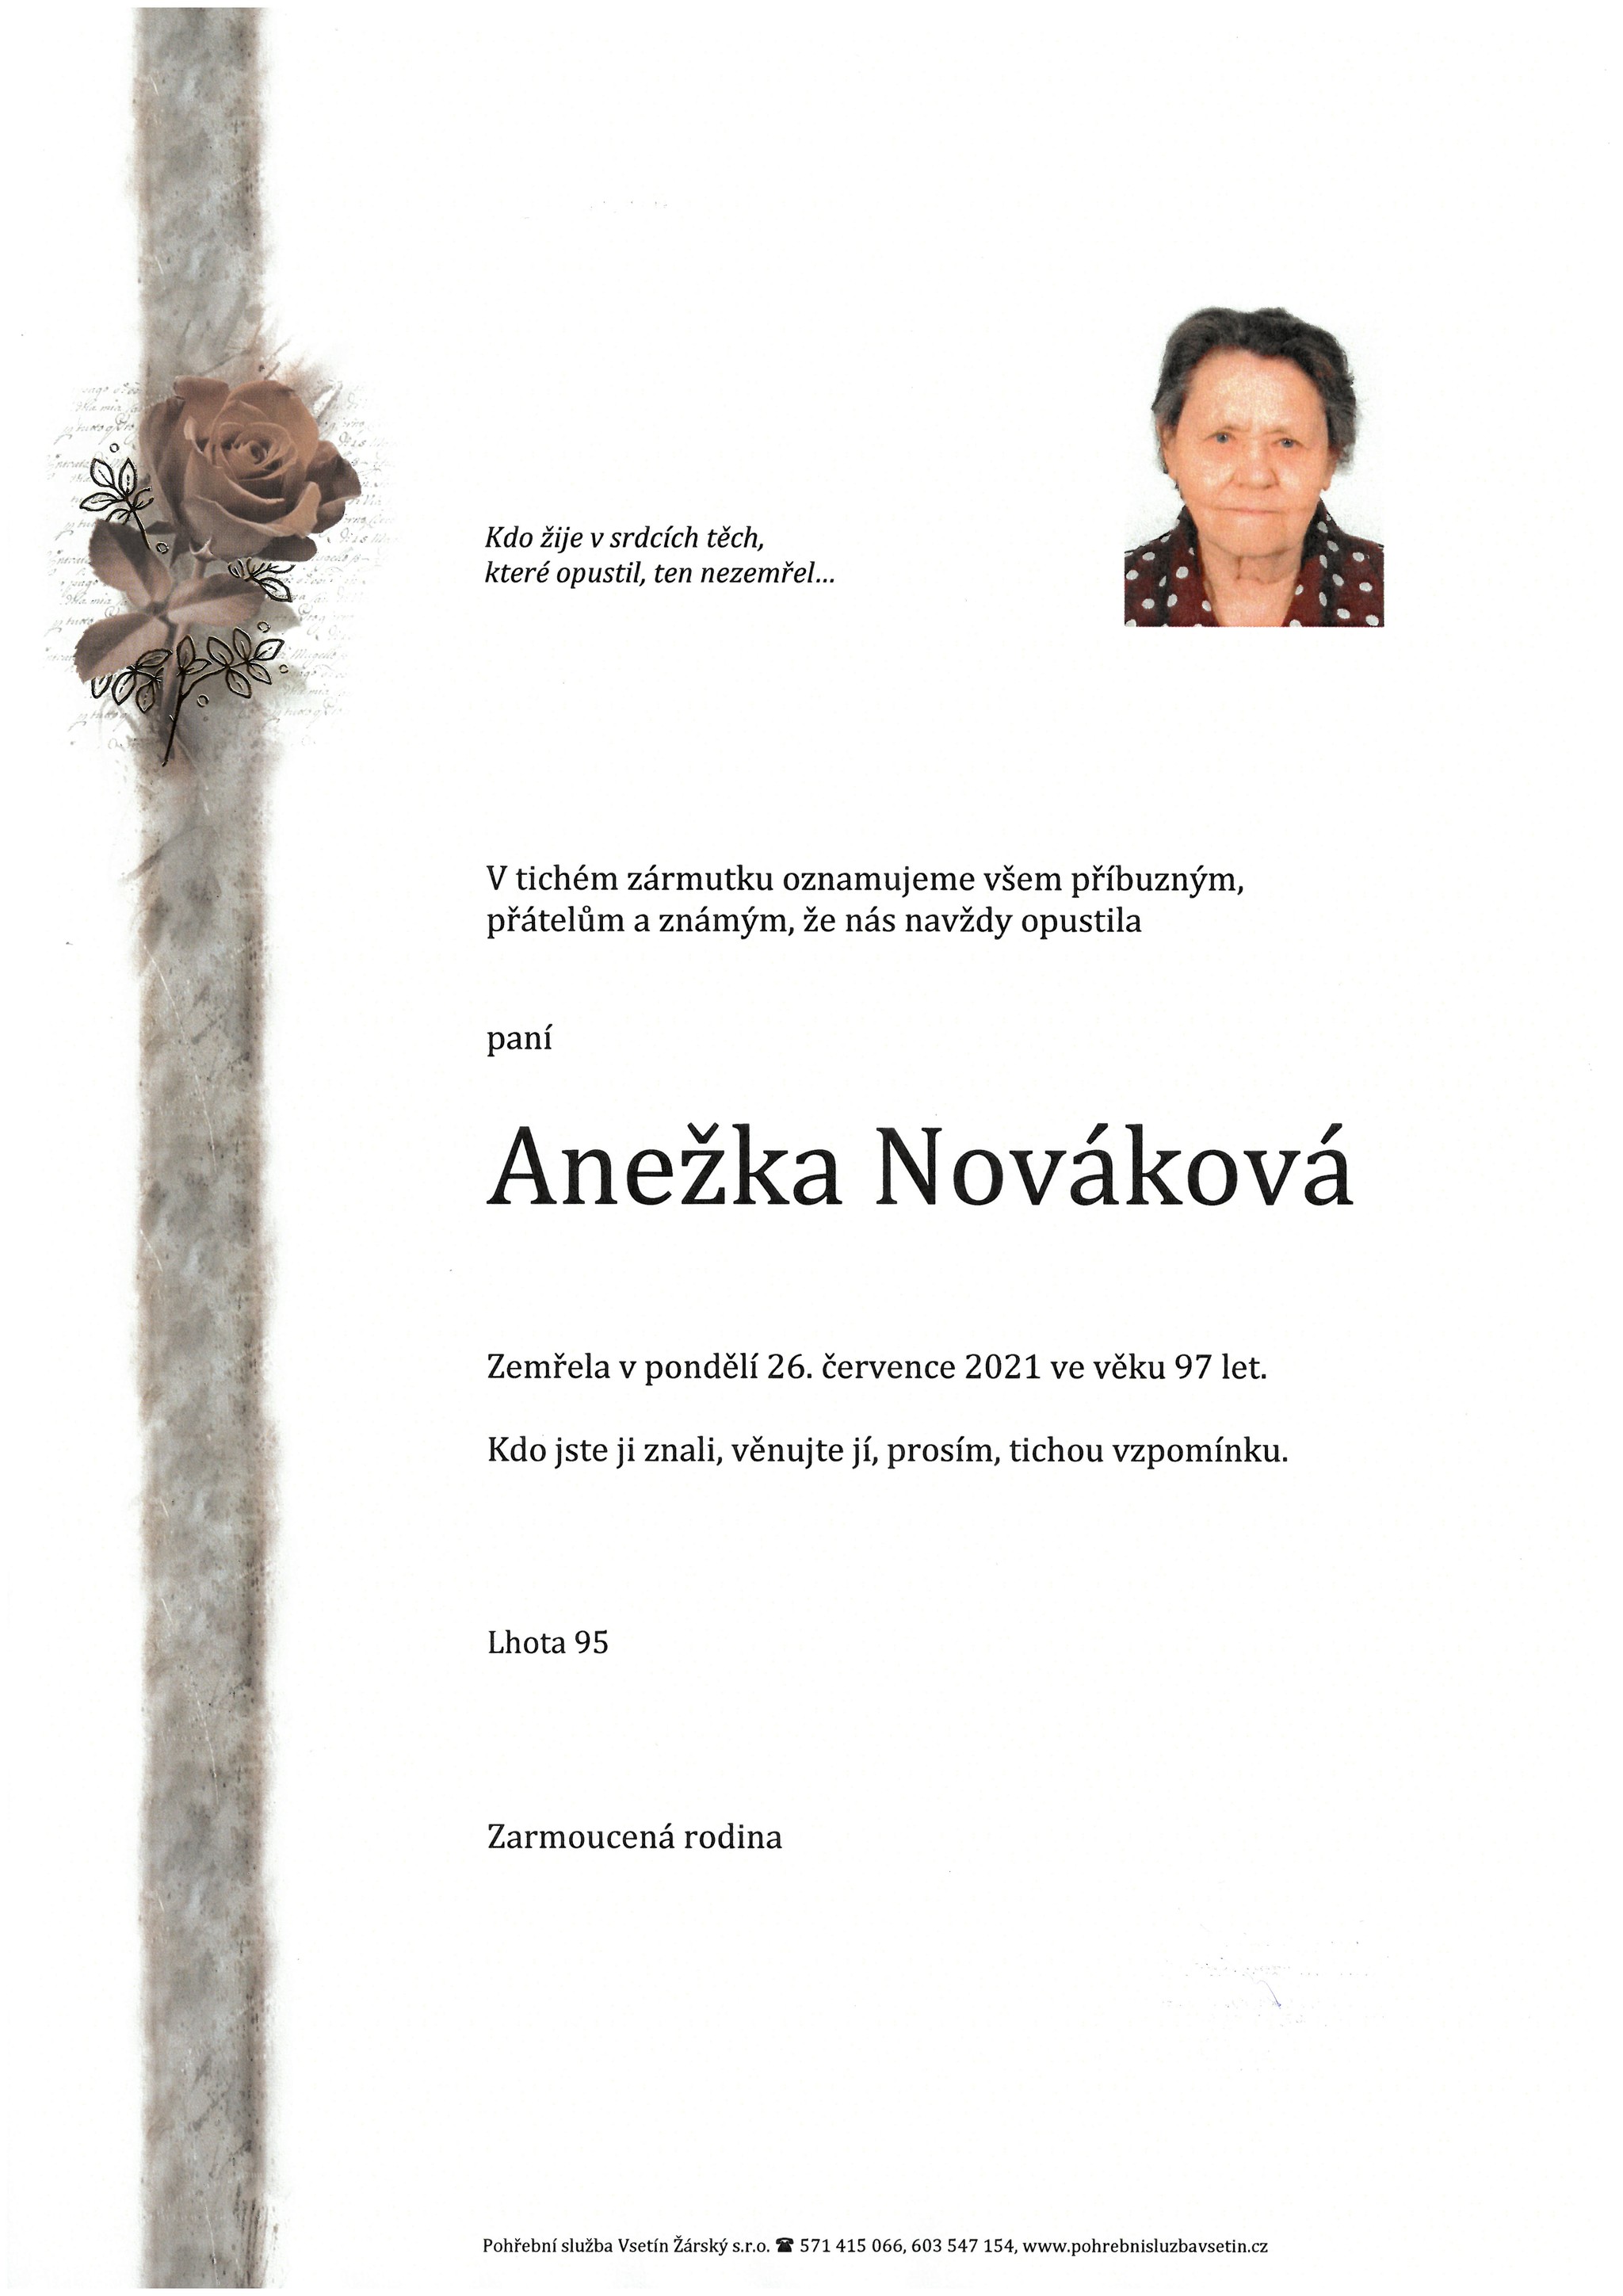 Anežka Nováková